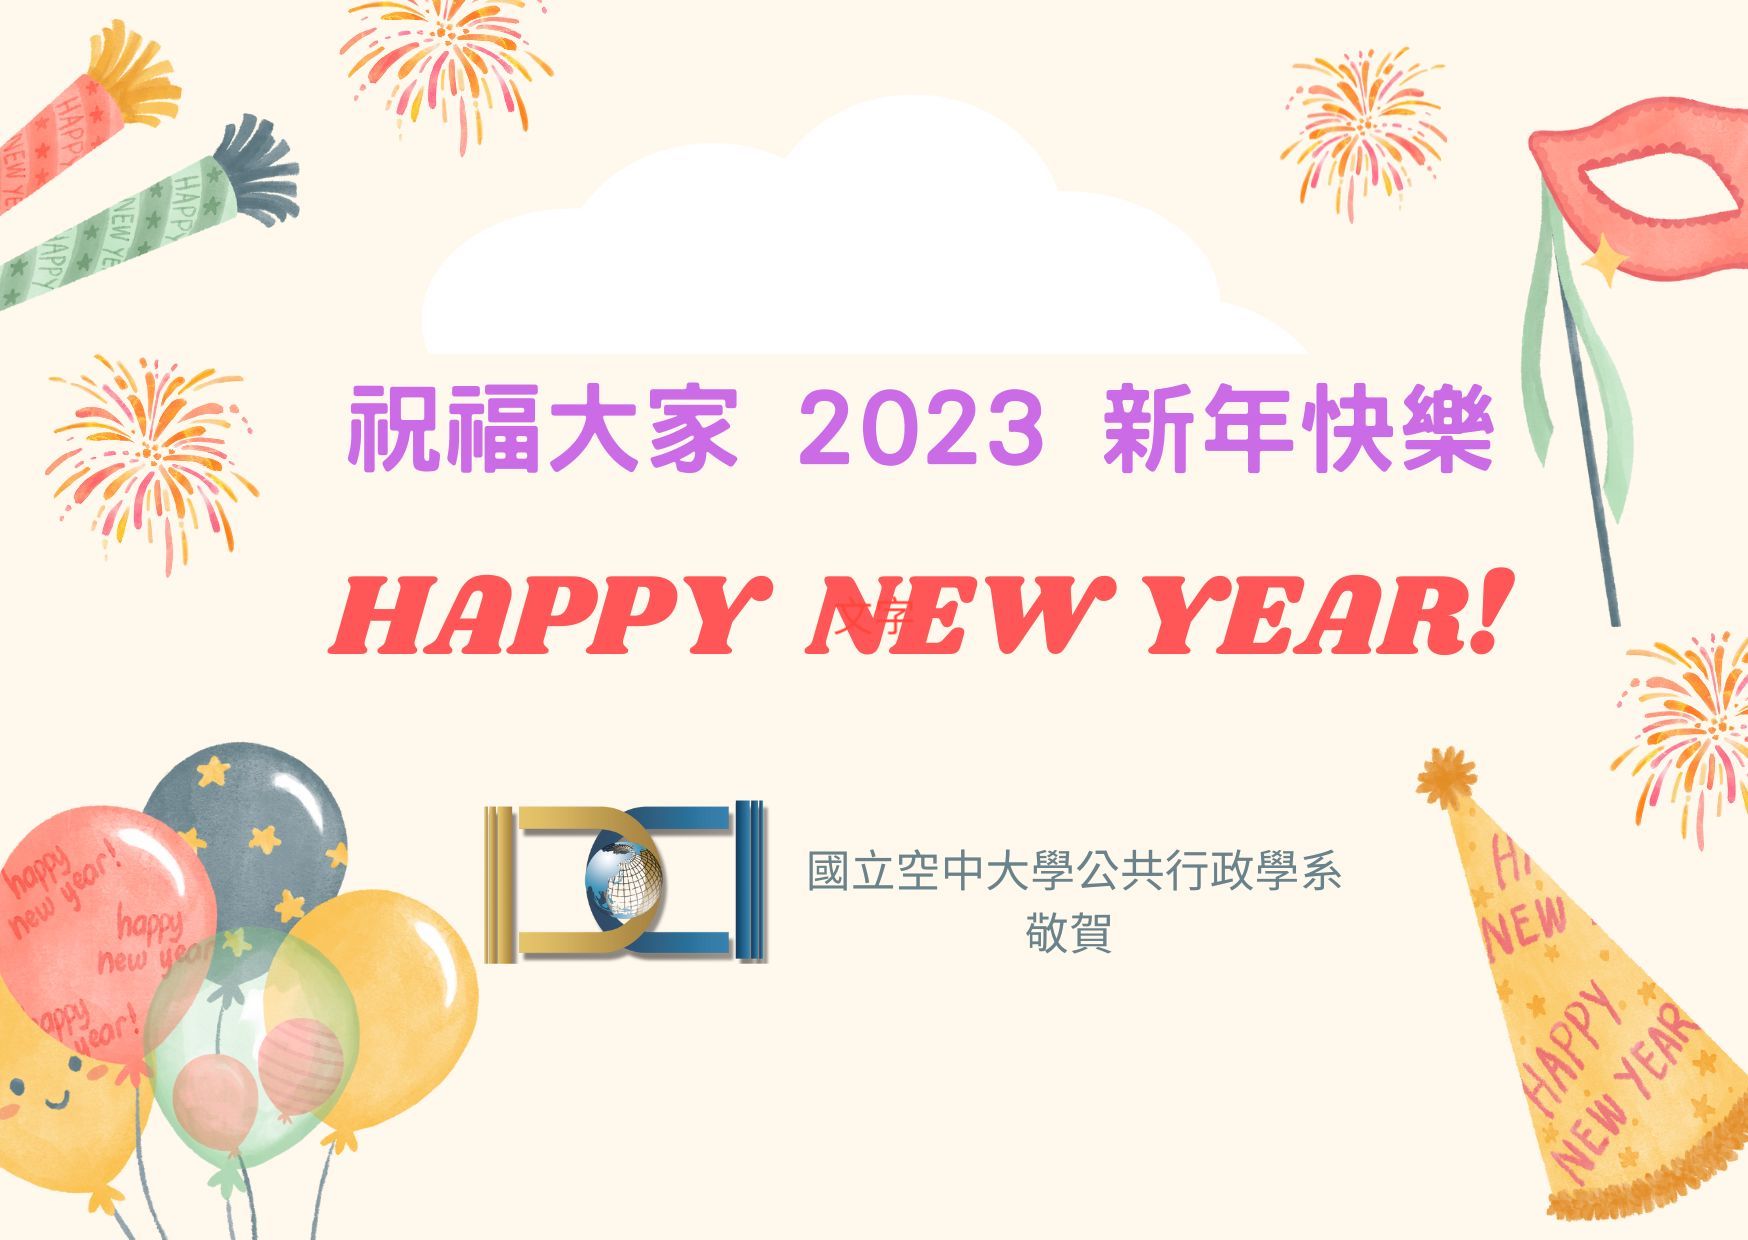 【敬祝】 空大公行系敬祝2023新年快樂！